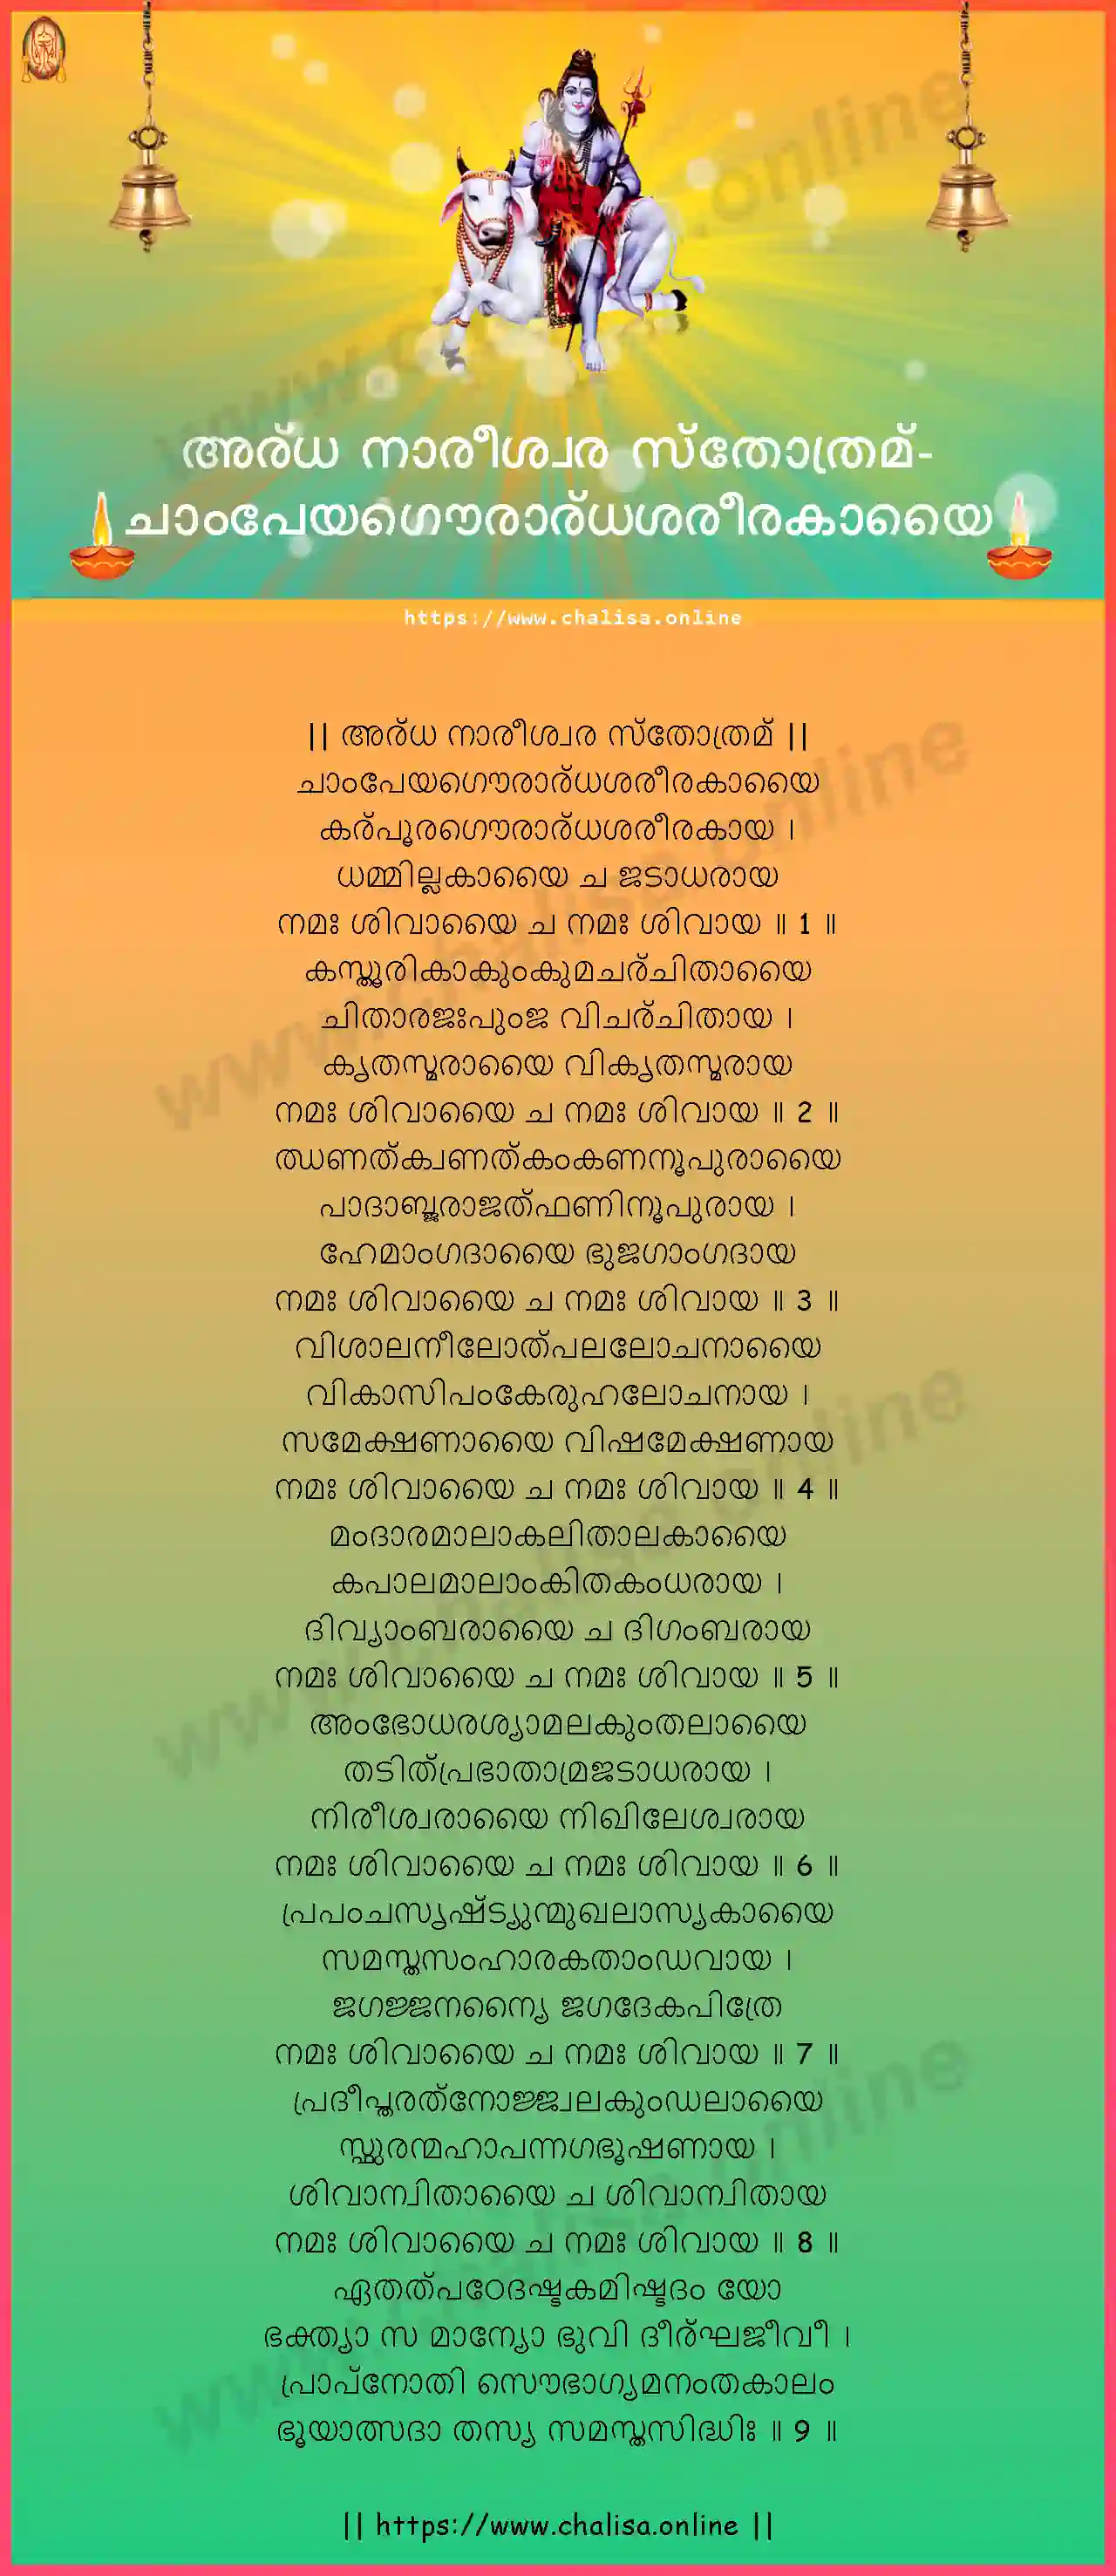 champeyagaurardhasarirakayai-ardha-nareeswara-stotram-malayalam-malayalam-lyrics-download